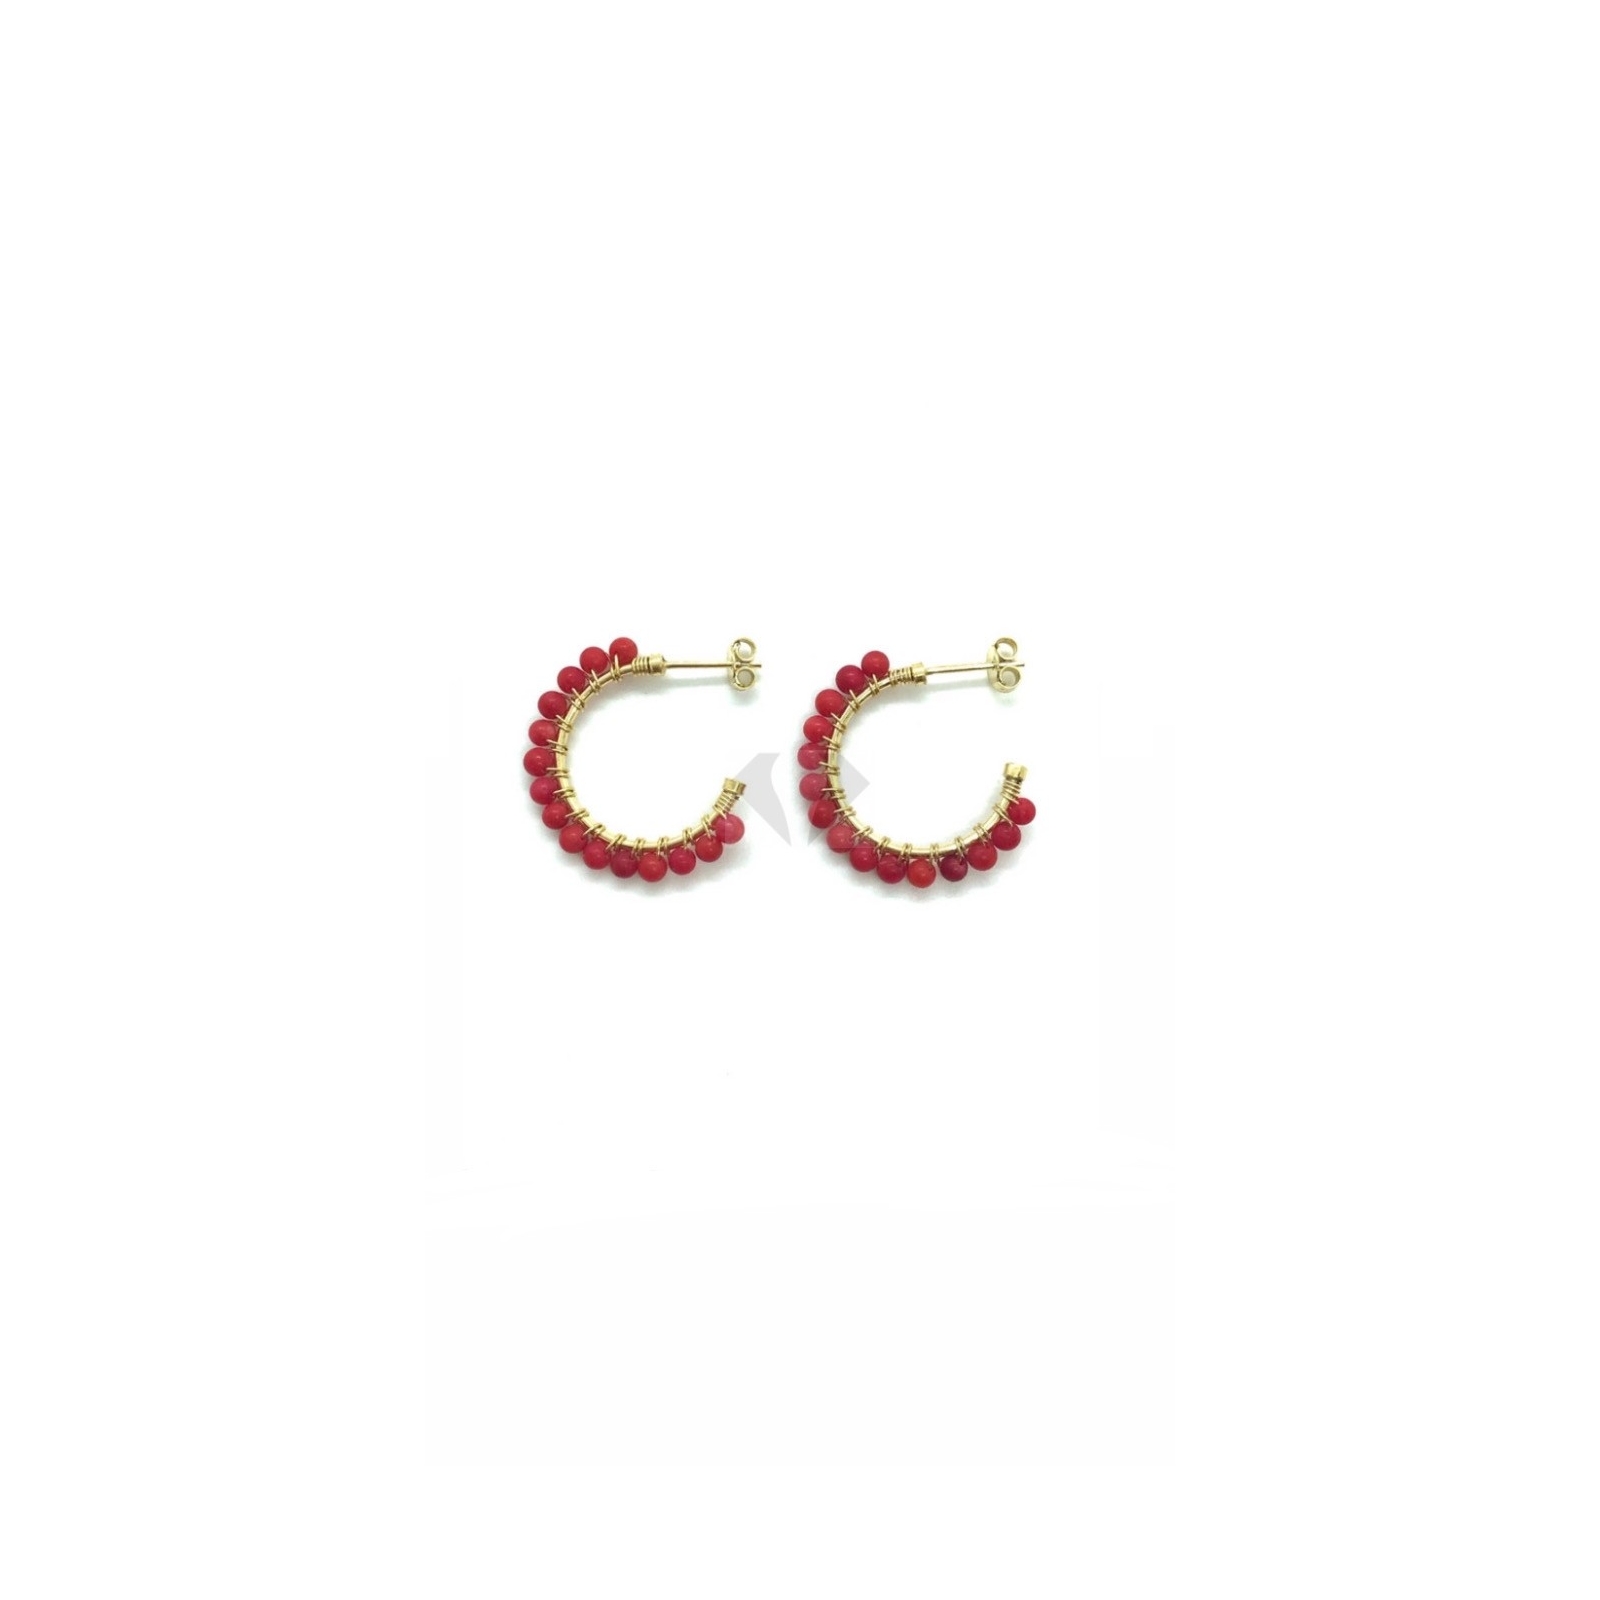 cerchietti perle mm 23 rosse in argento  925%   (prezzo inteso per la coppia )BASE PLACCATO ORO